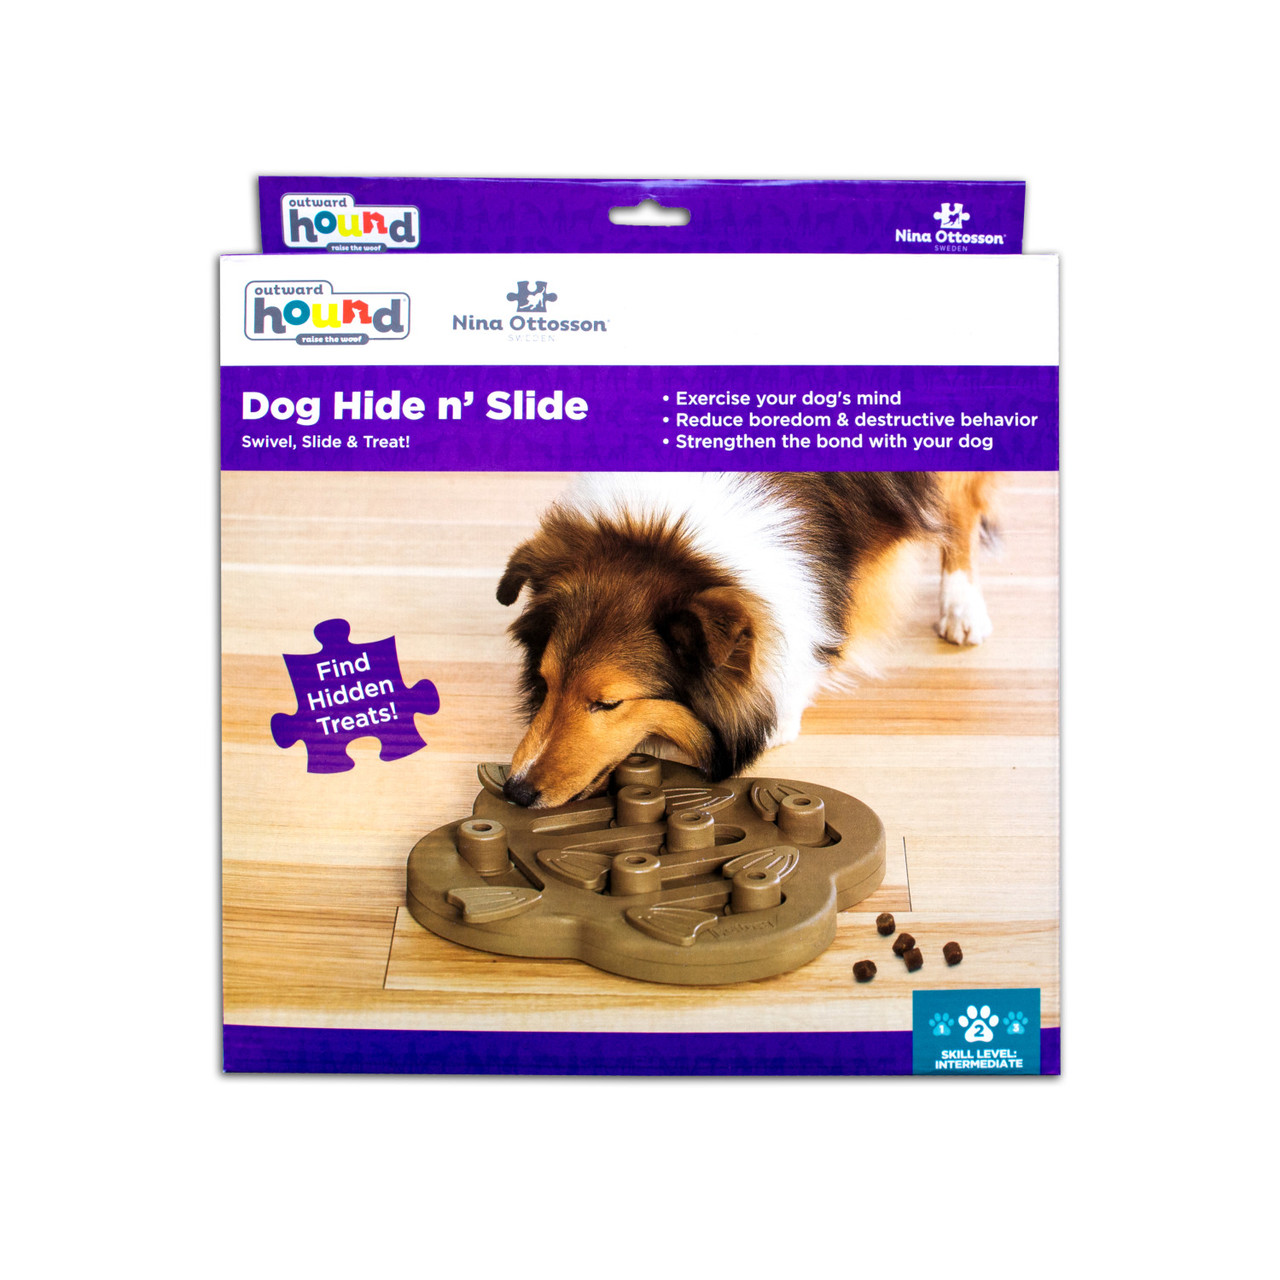 Nina Ottosson Puzzle Dog Toy - Challenge Slider Level 3